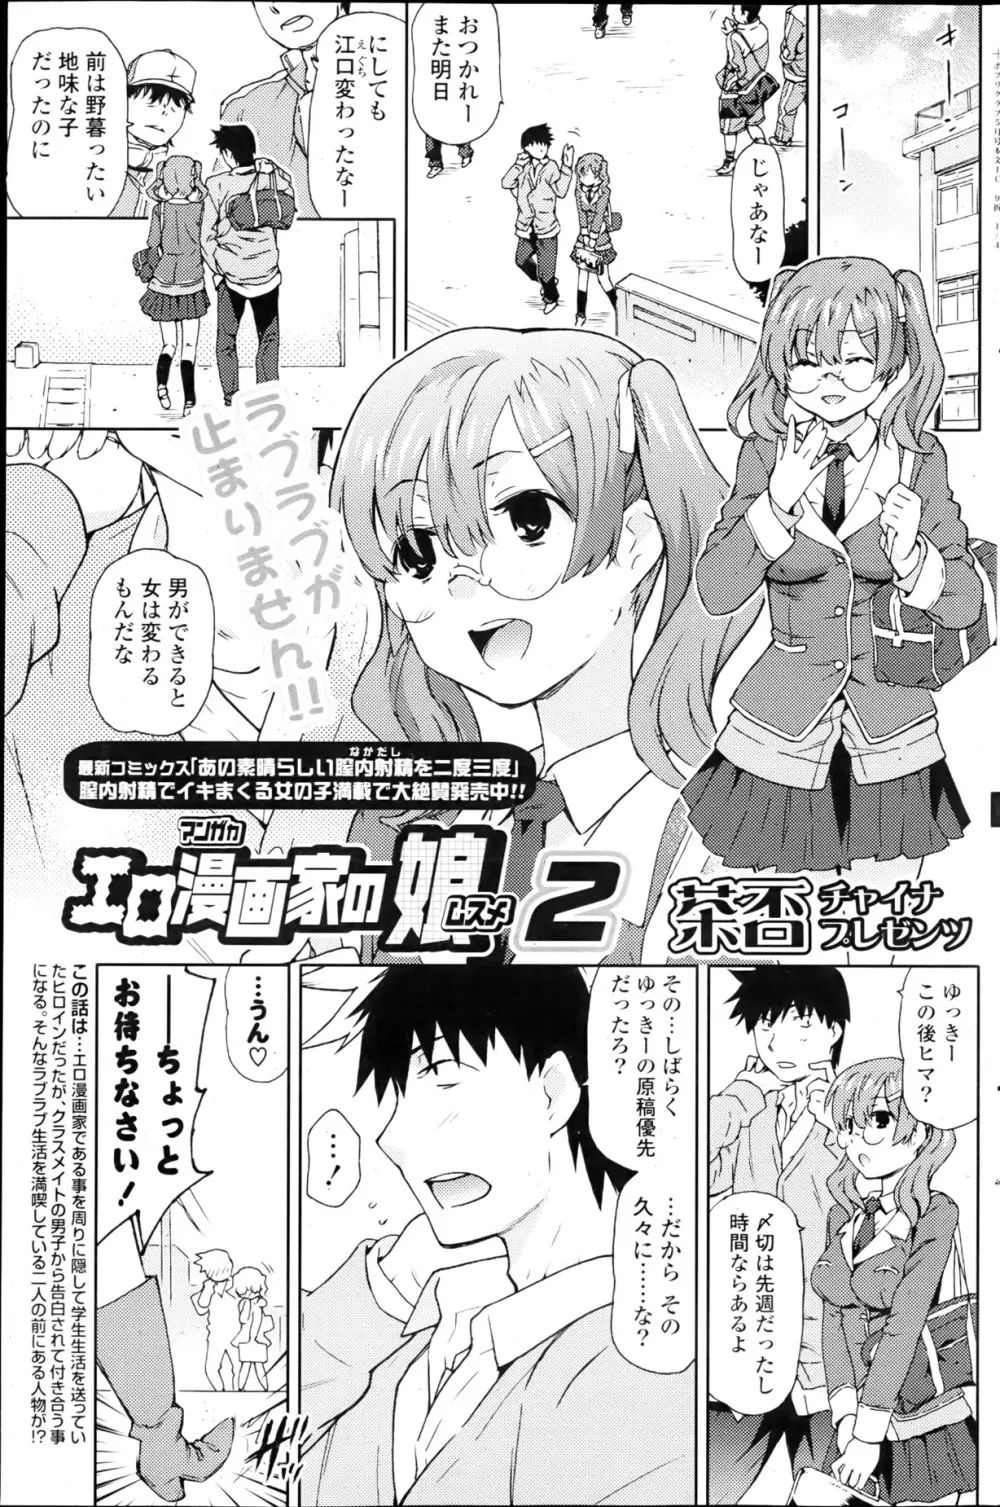 Ero Mangaka no Musume Ch.1-2 17ページ